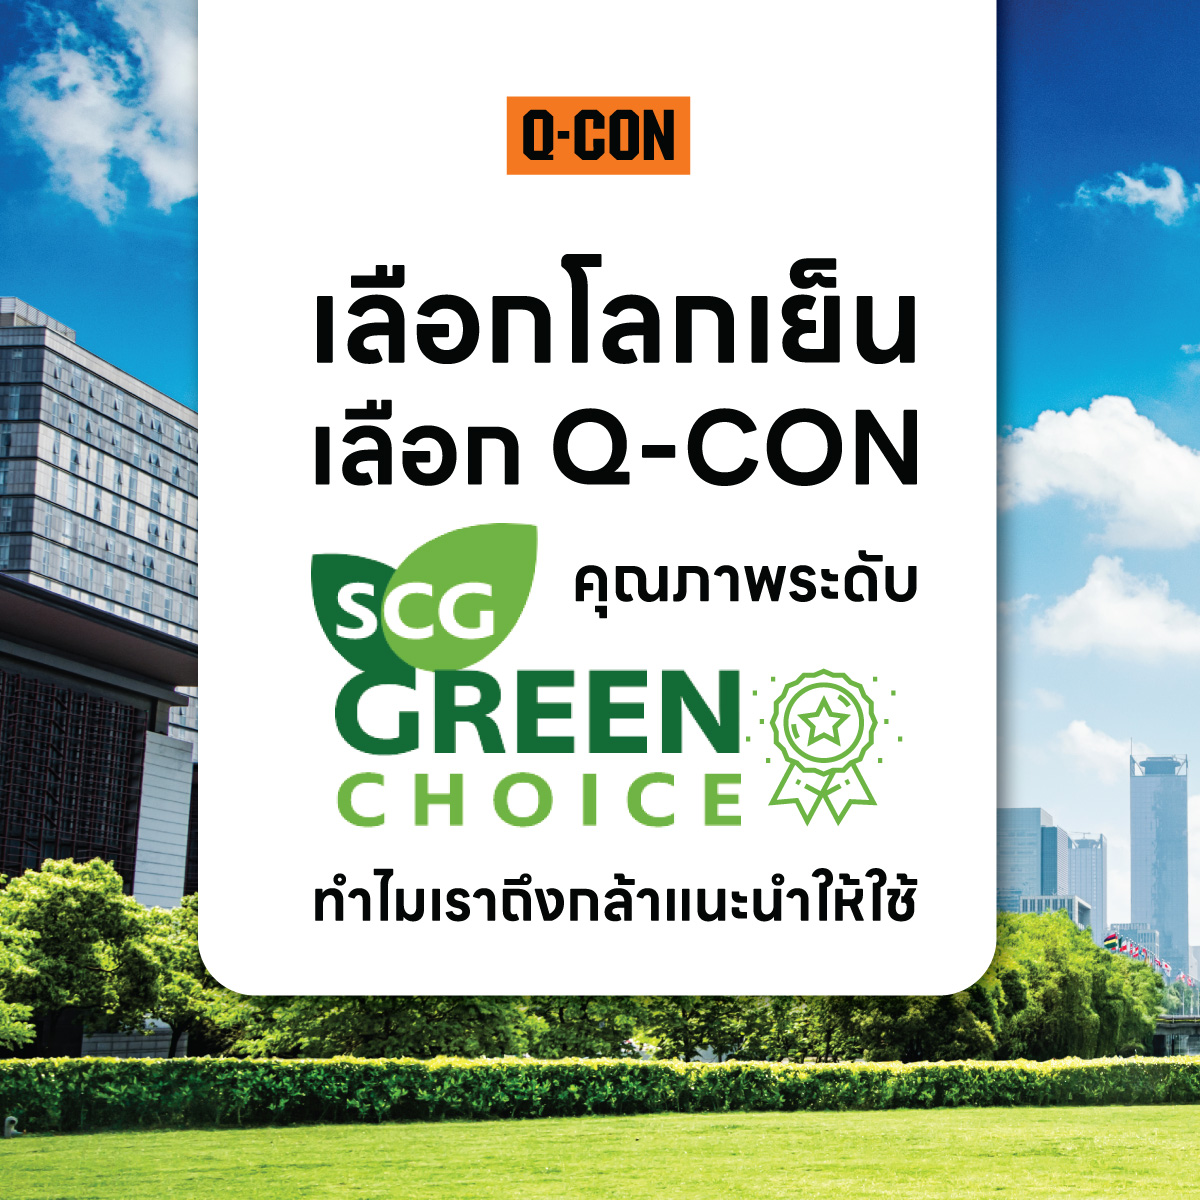 คุณภาพระดับ SCG Green Choice ทำไมเราถึงกล้าแนะนำให้ใช้ Q-CON